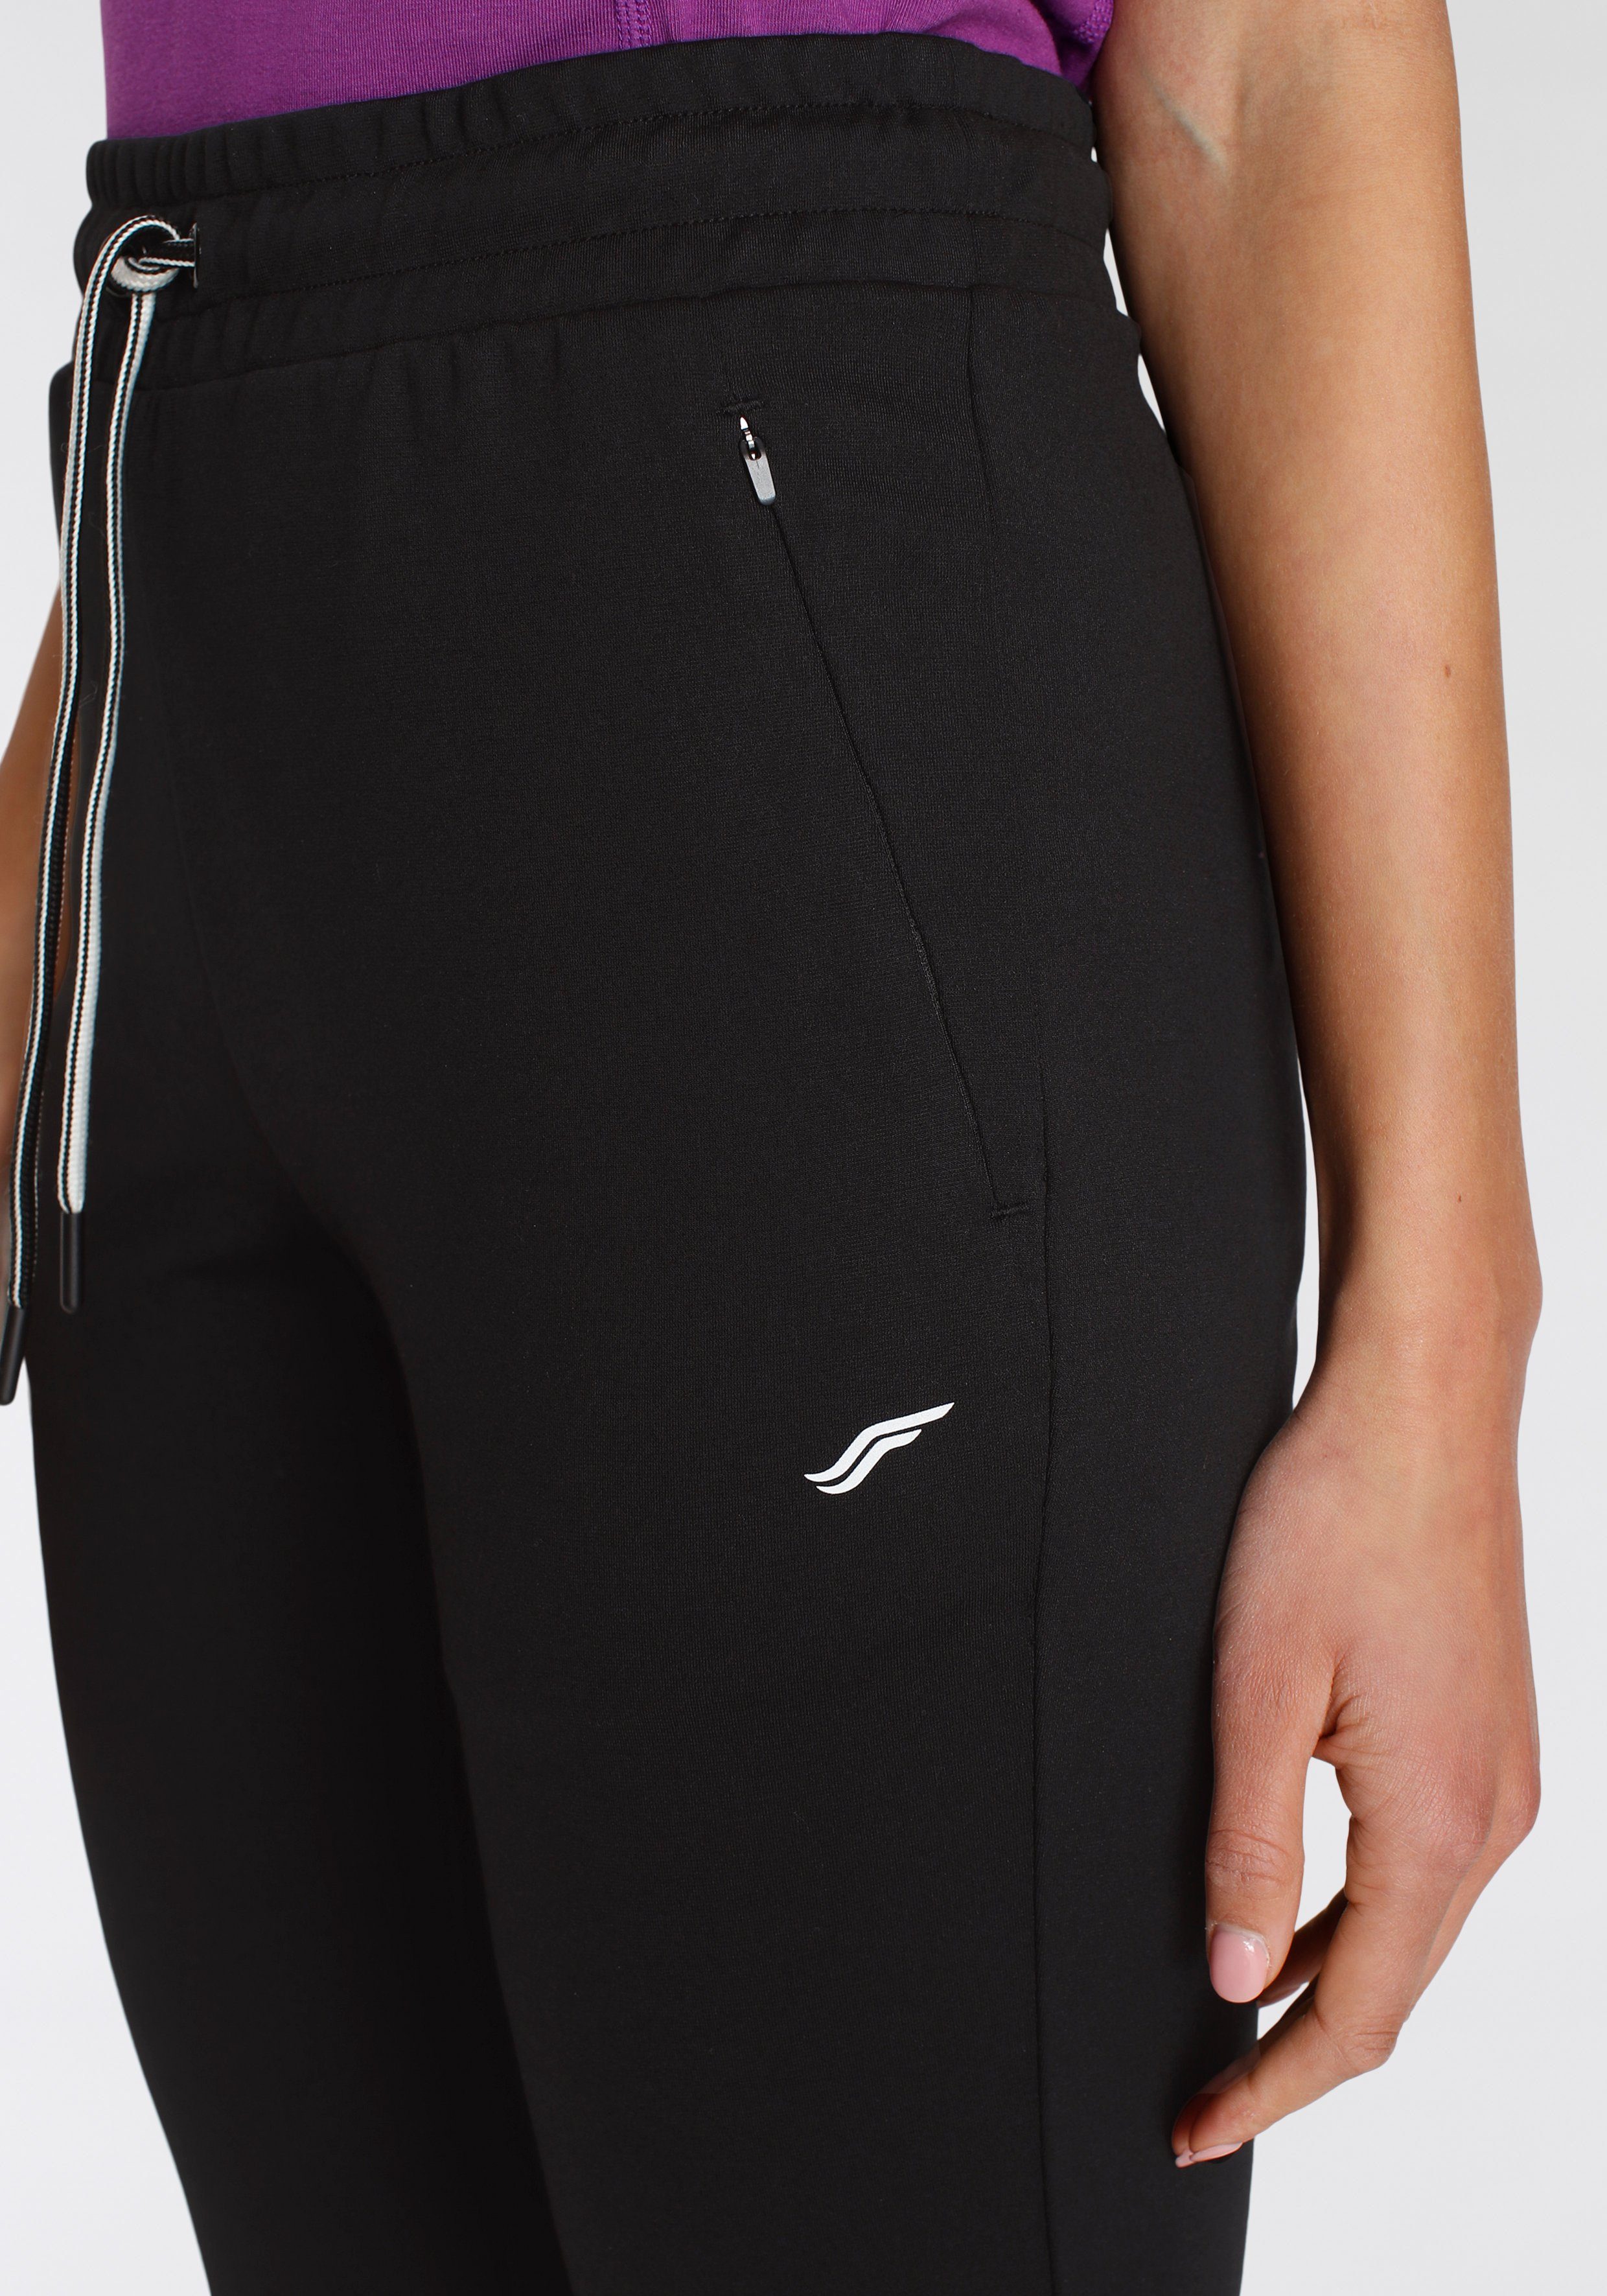 mit FAYN SPORTS Jogginghose Relaxed schwarz Reißverschlusstaschen Fit